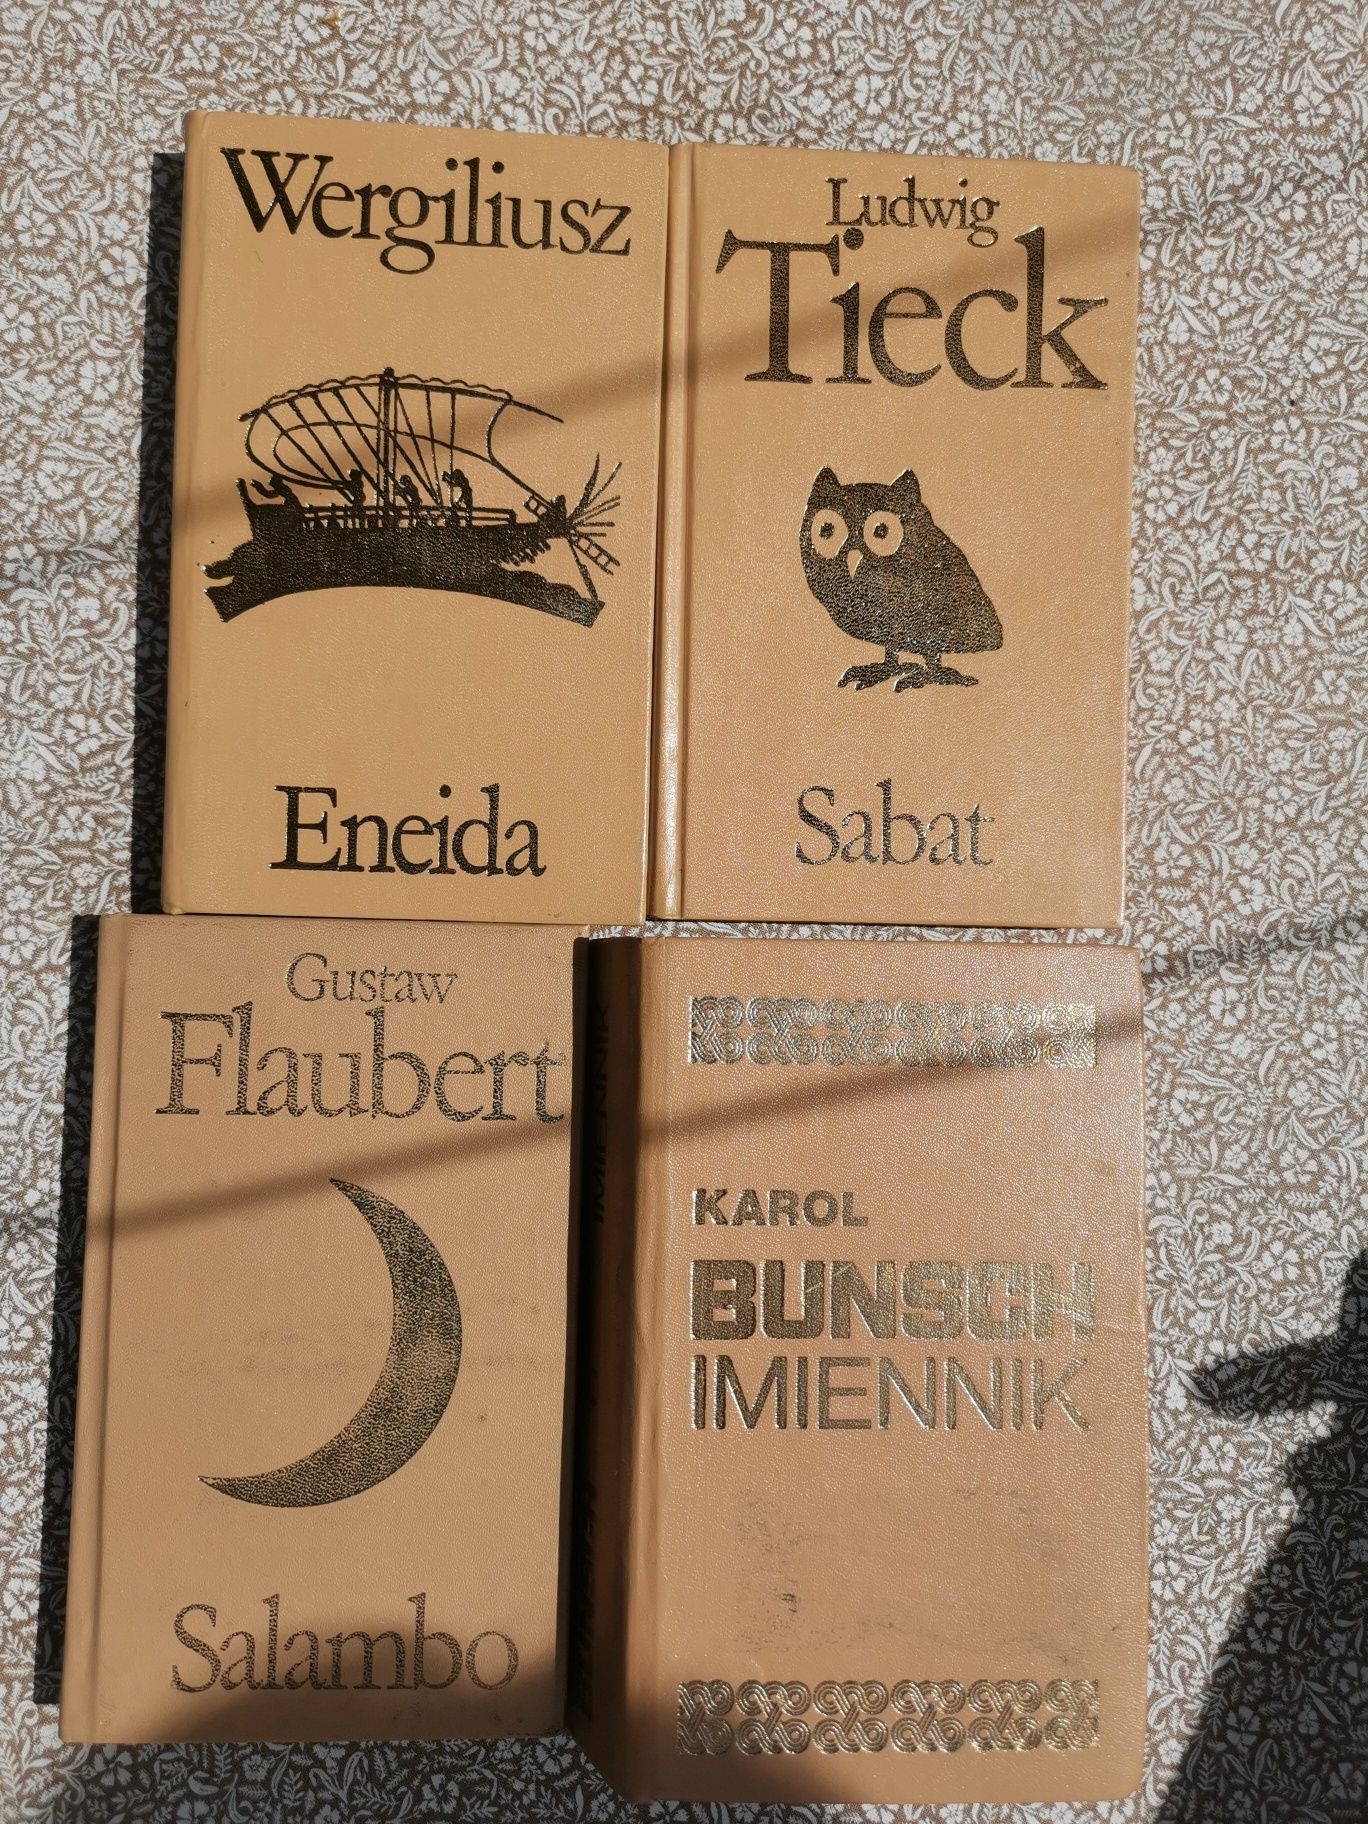 Wergiliusz- ,,Eneida", Tieck ,,Sabat", Flaubert, Bunsch